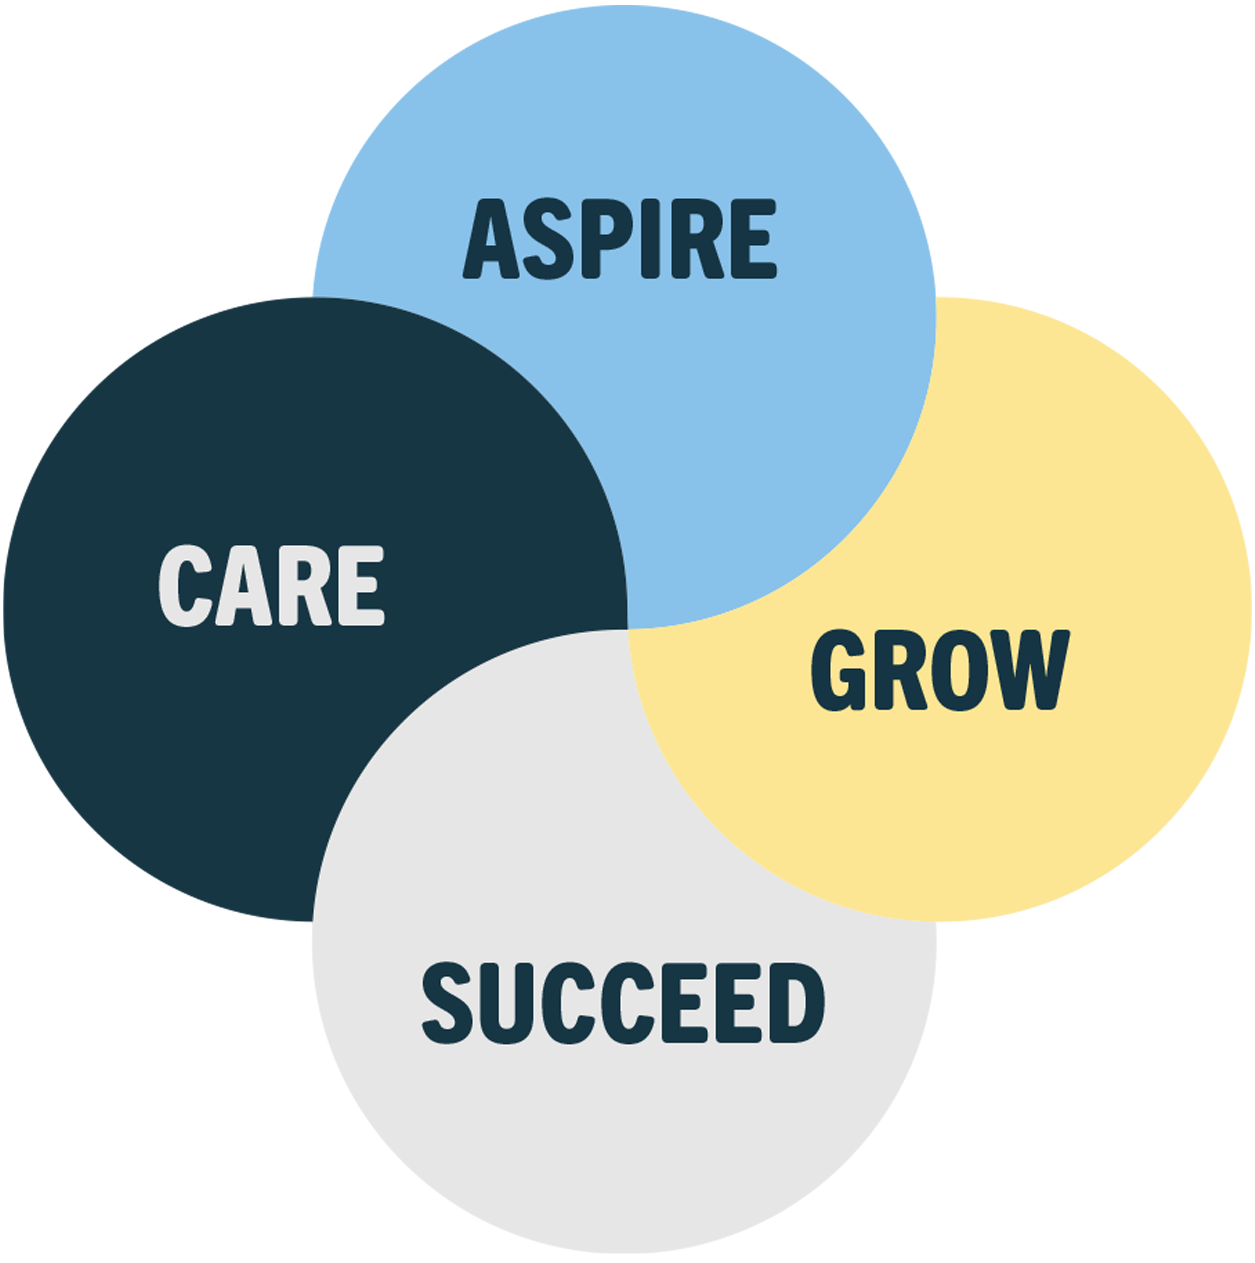 School values - Care, Aspire, Grow, Succeed